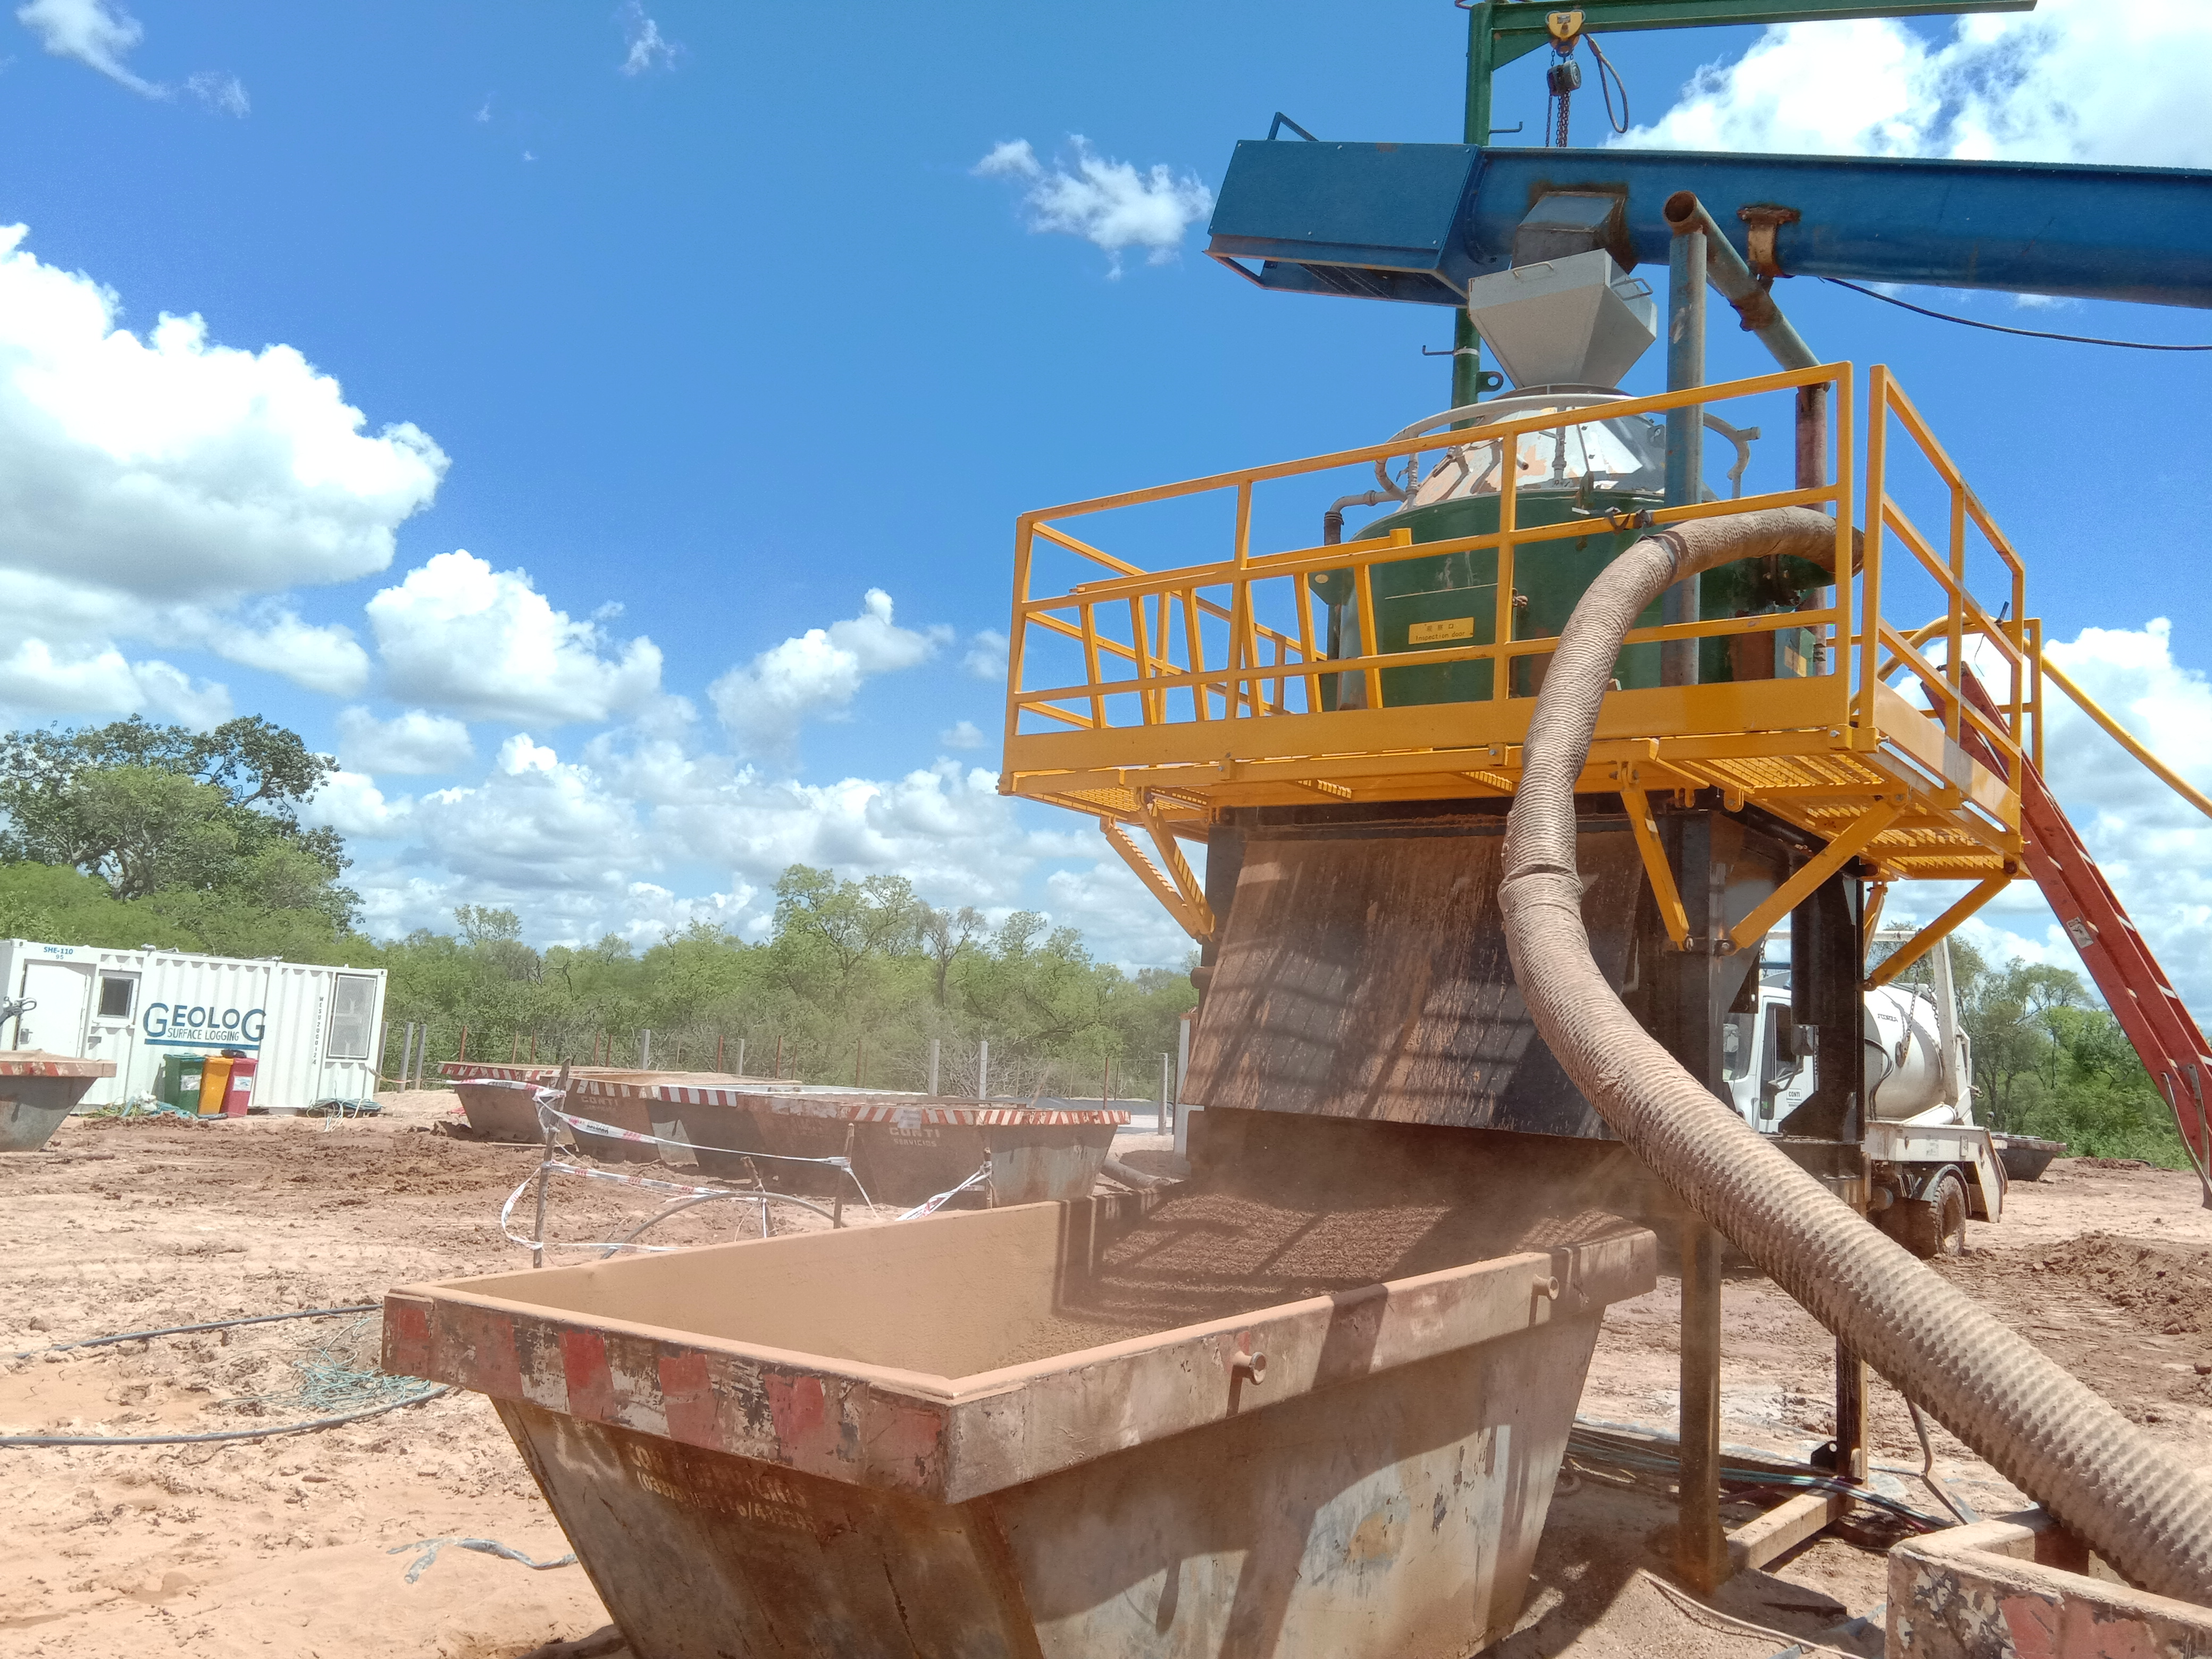 科迅的泥浆不落地设备适用于中大型工地的泥浆处理